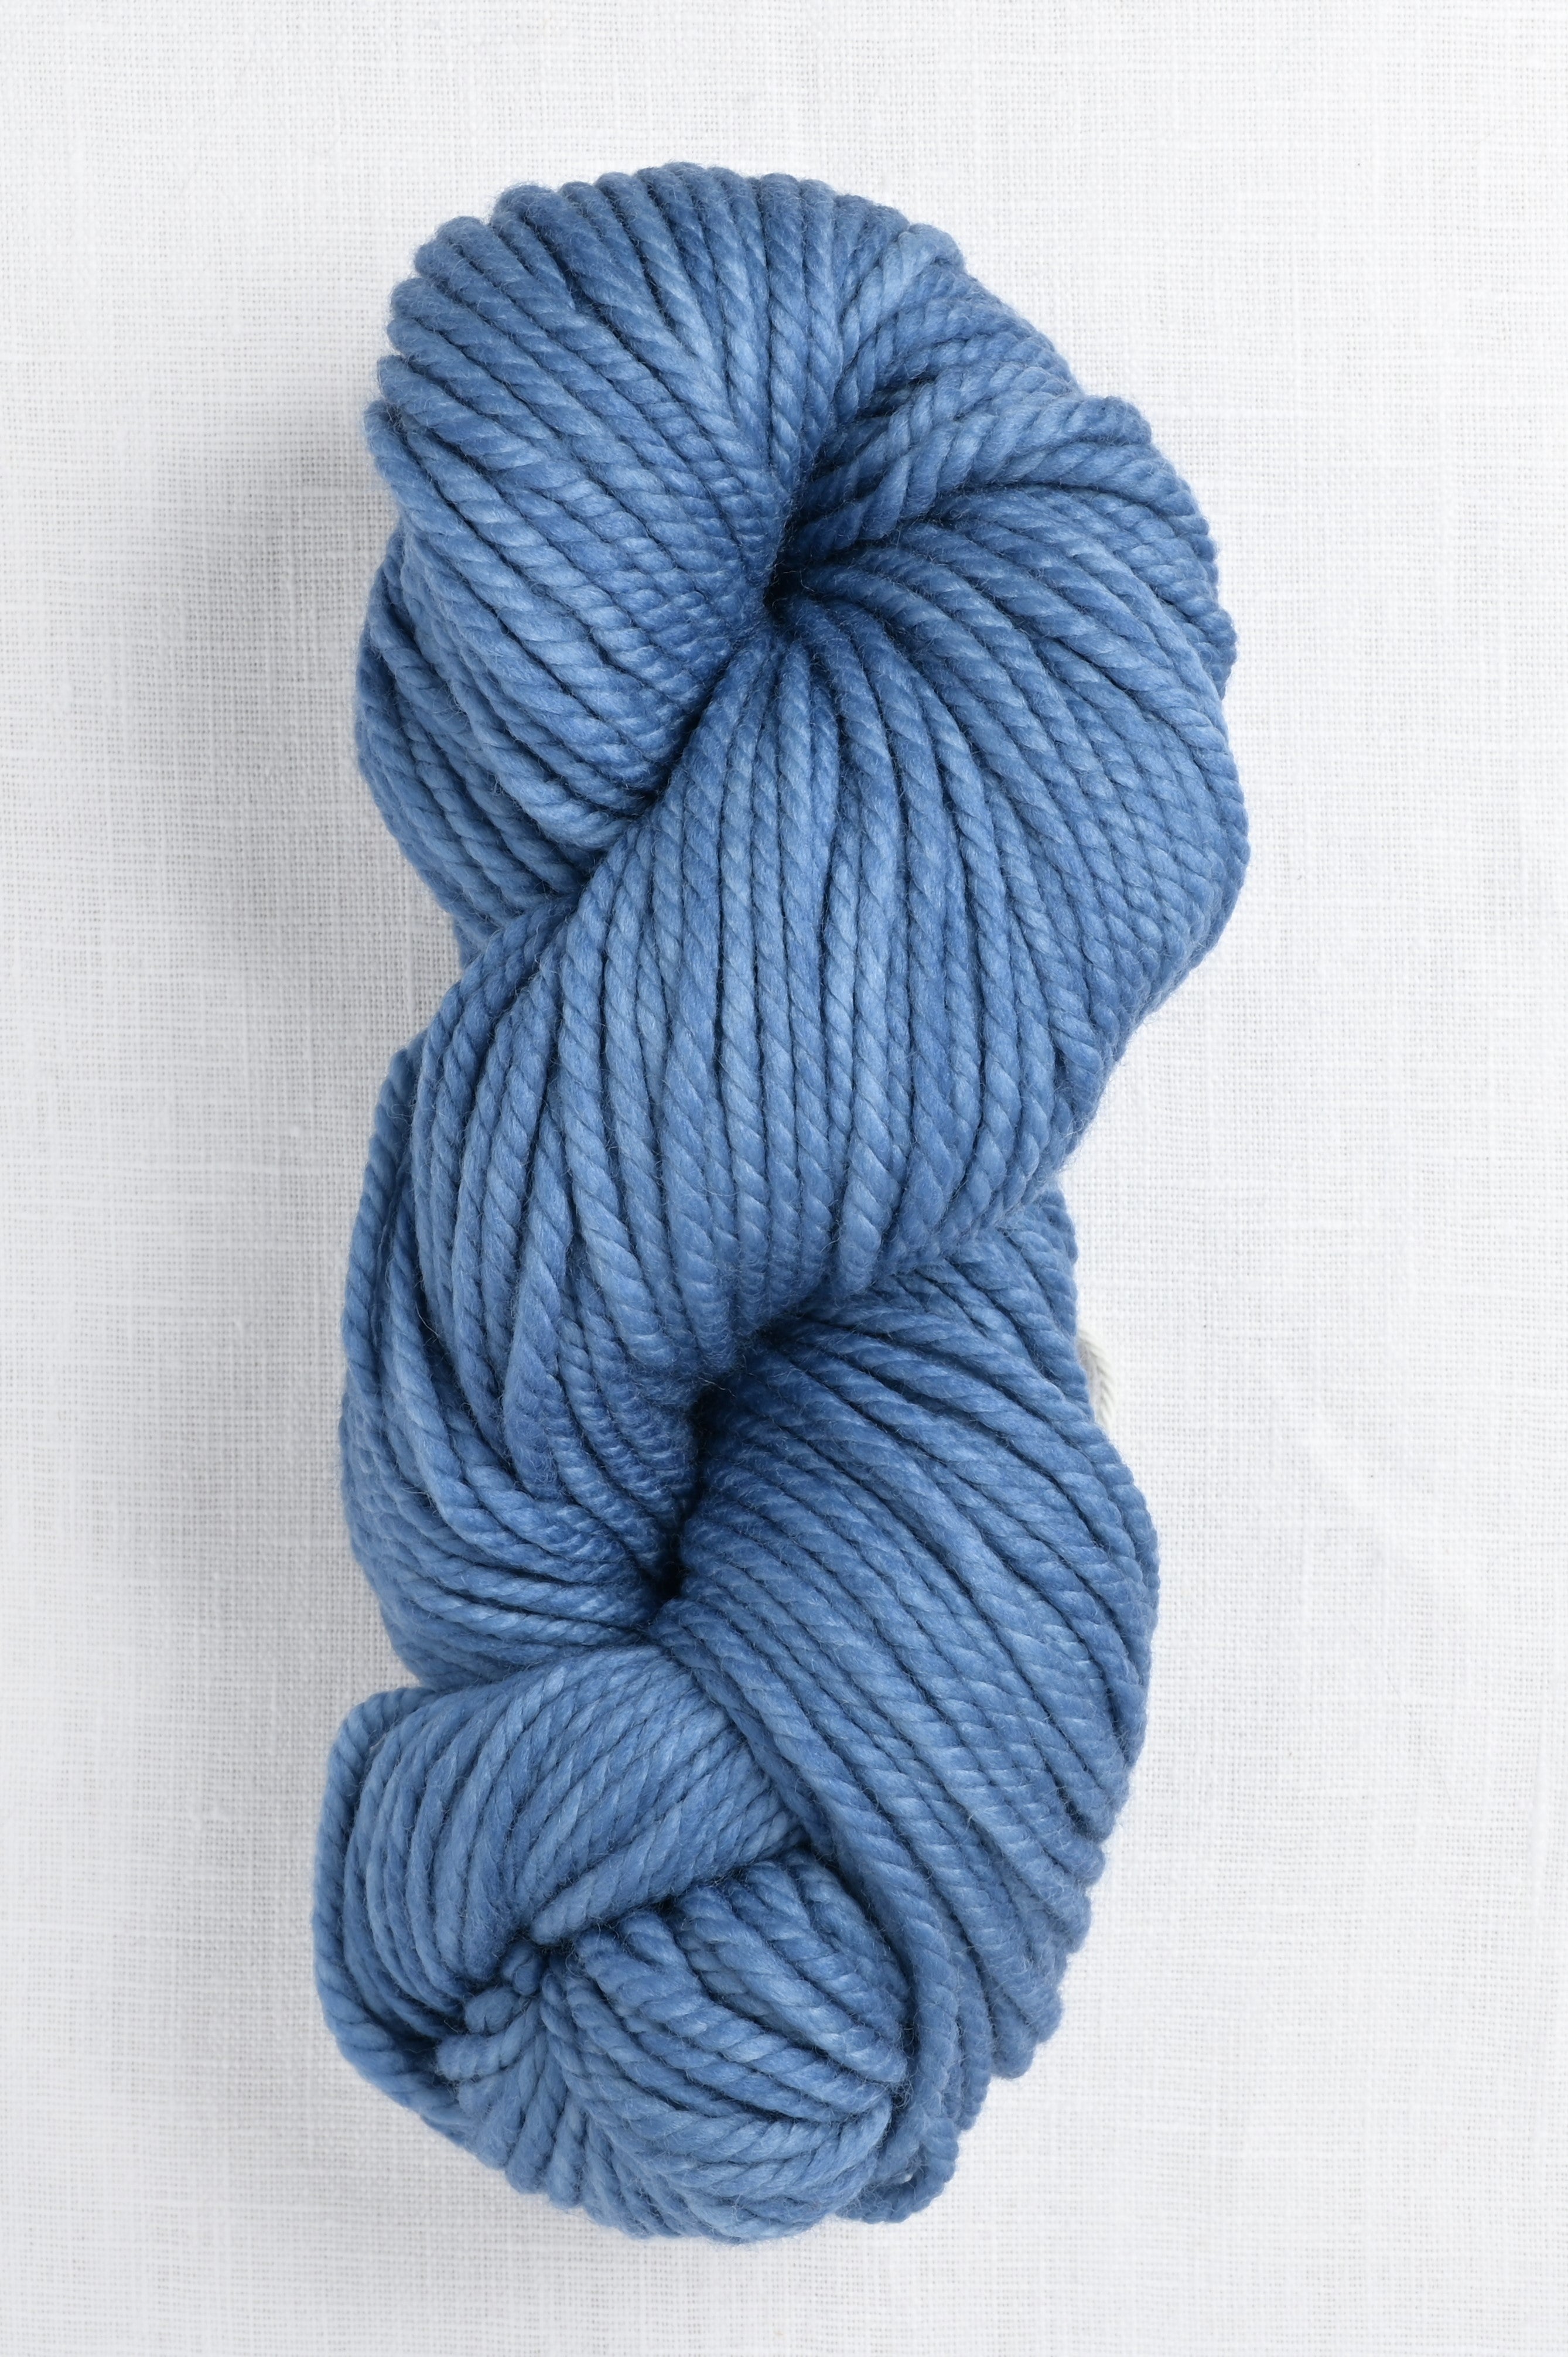 Malabrigo Chunky Yarn - Hand Dyed Yarn - Knit Along Club